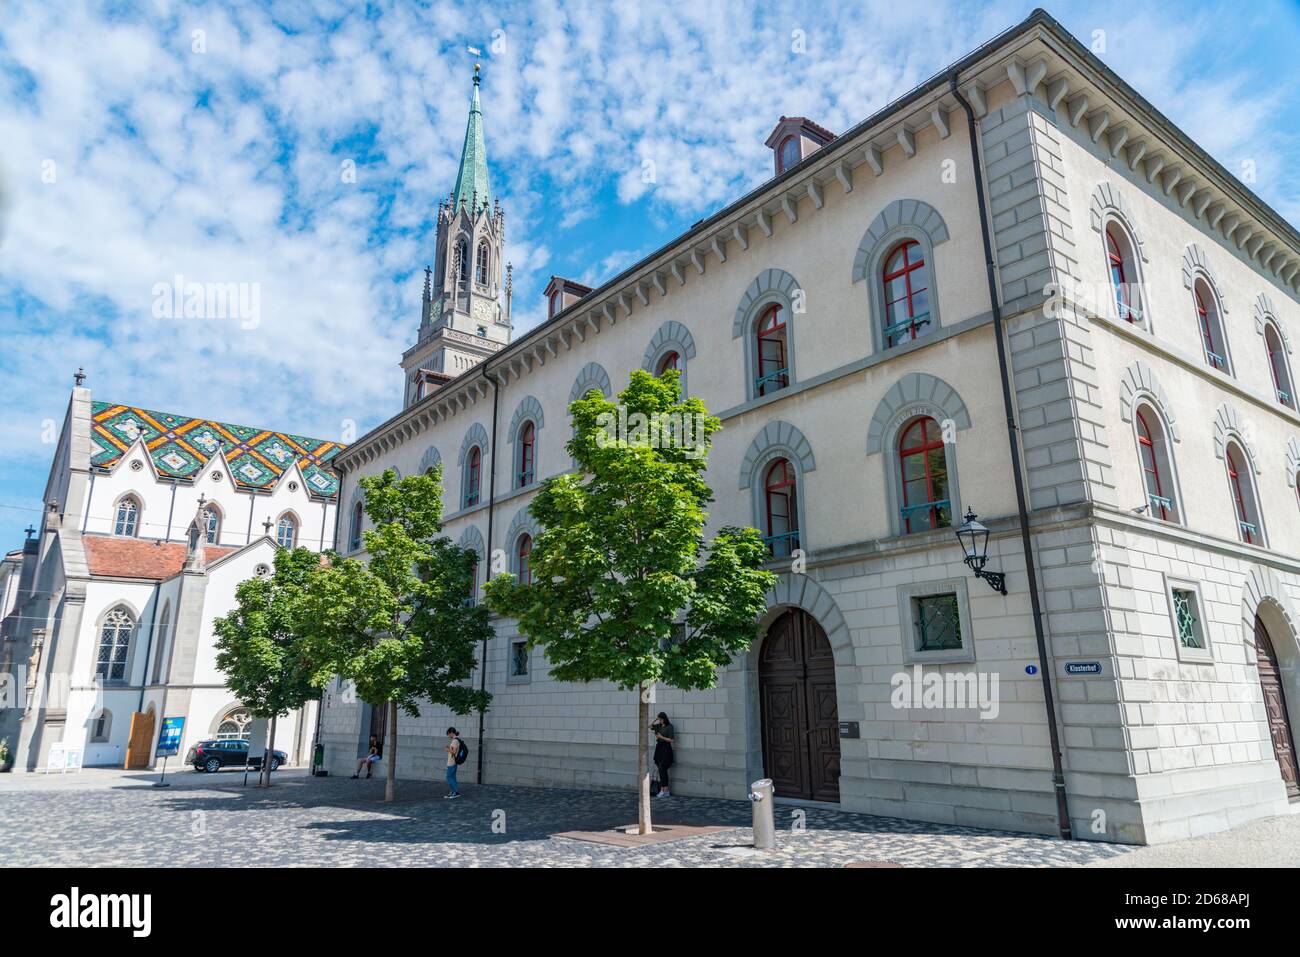 Old town of St. Gallen and St. Laurenzen Church, Switzerland Stock Photo